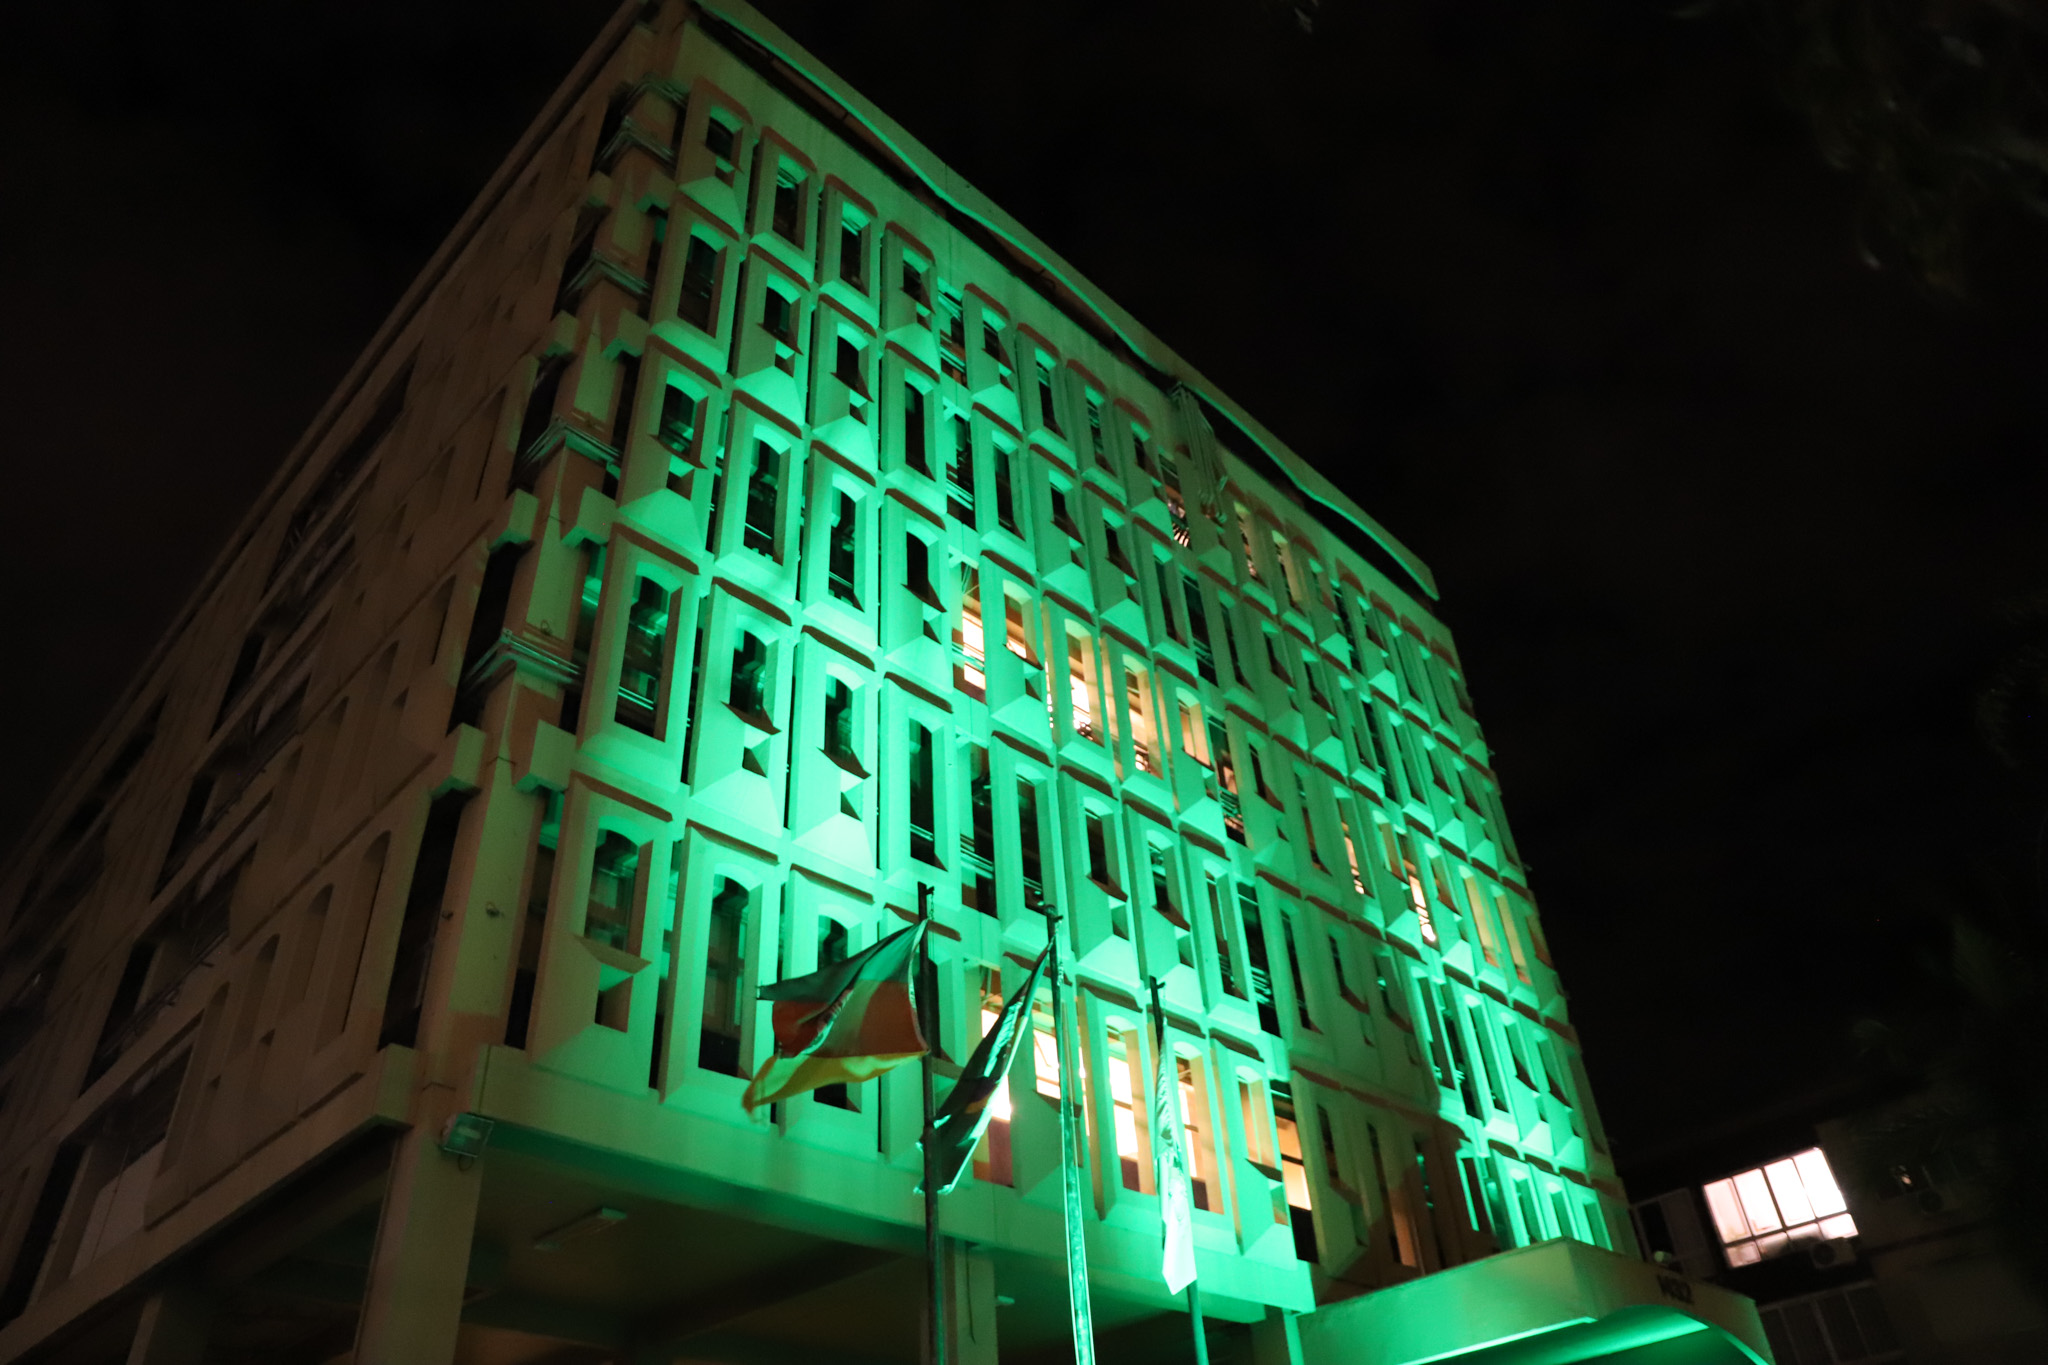 Foto do prédio do Foro Trabalhista de Porto Alegre iluminado de verde